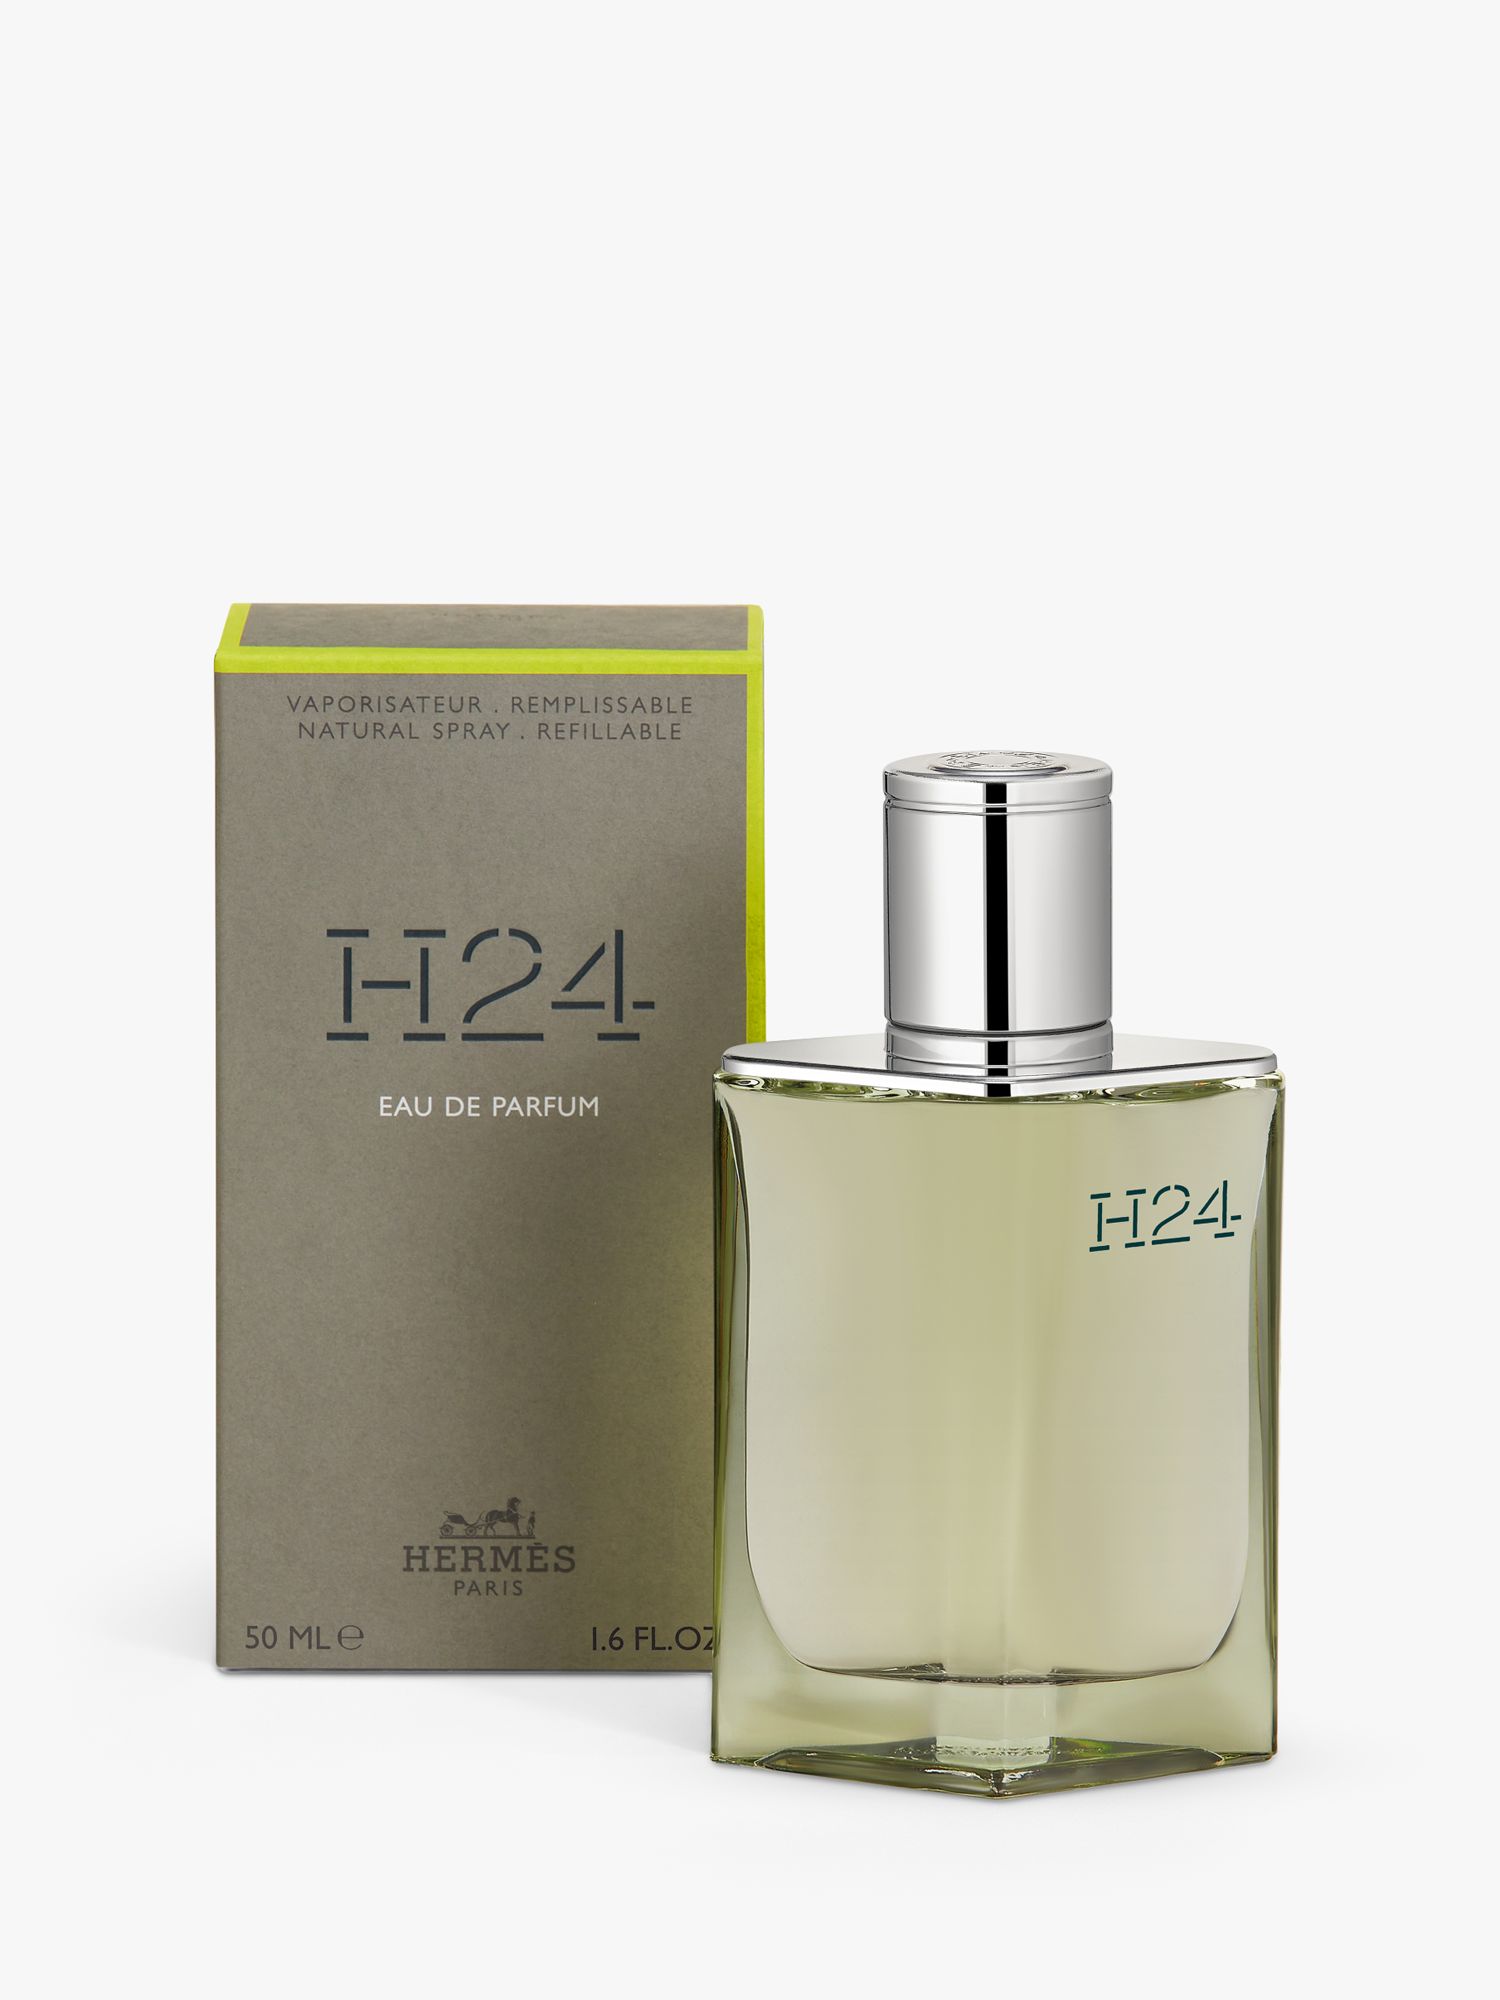 Hermès H24 Eau de Parfum Natural Spray, Refillable, 50ml 2